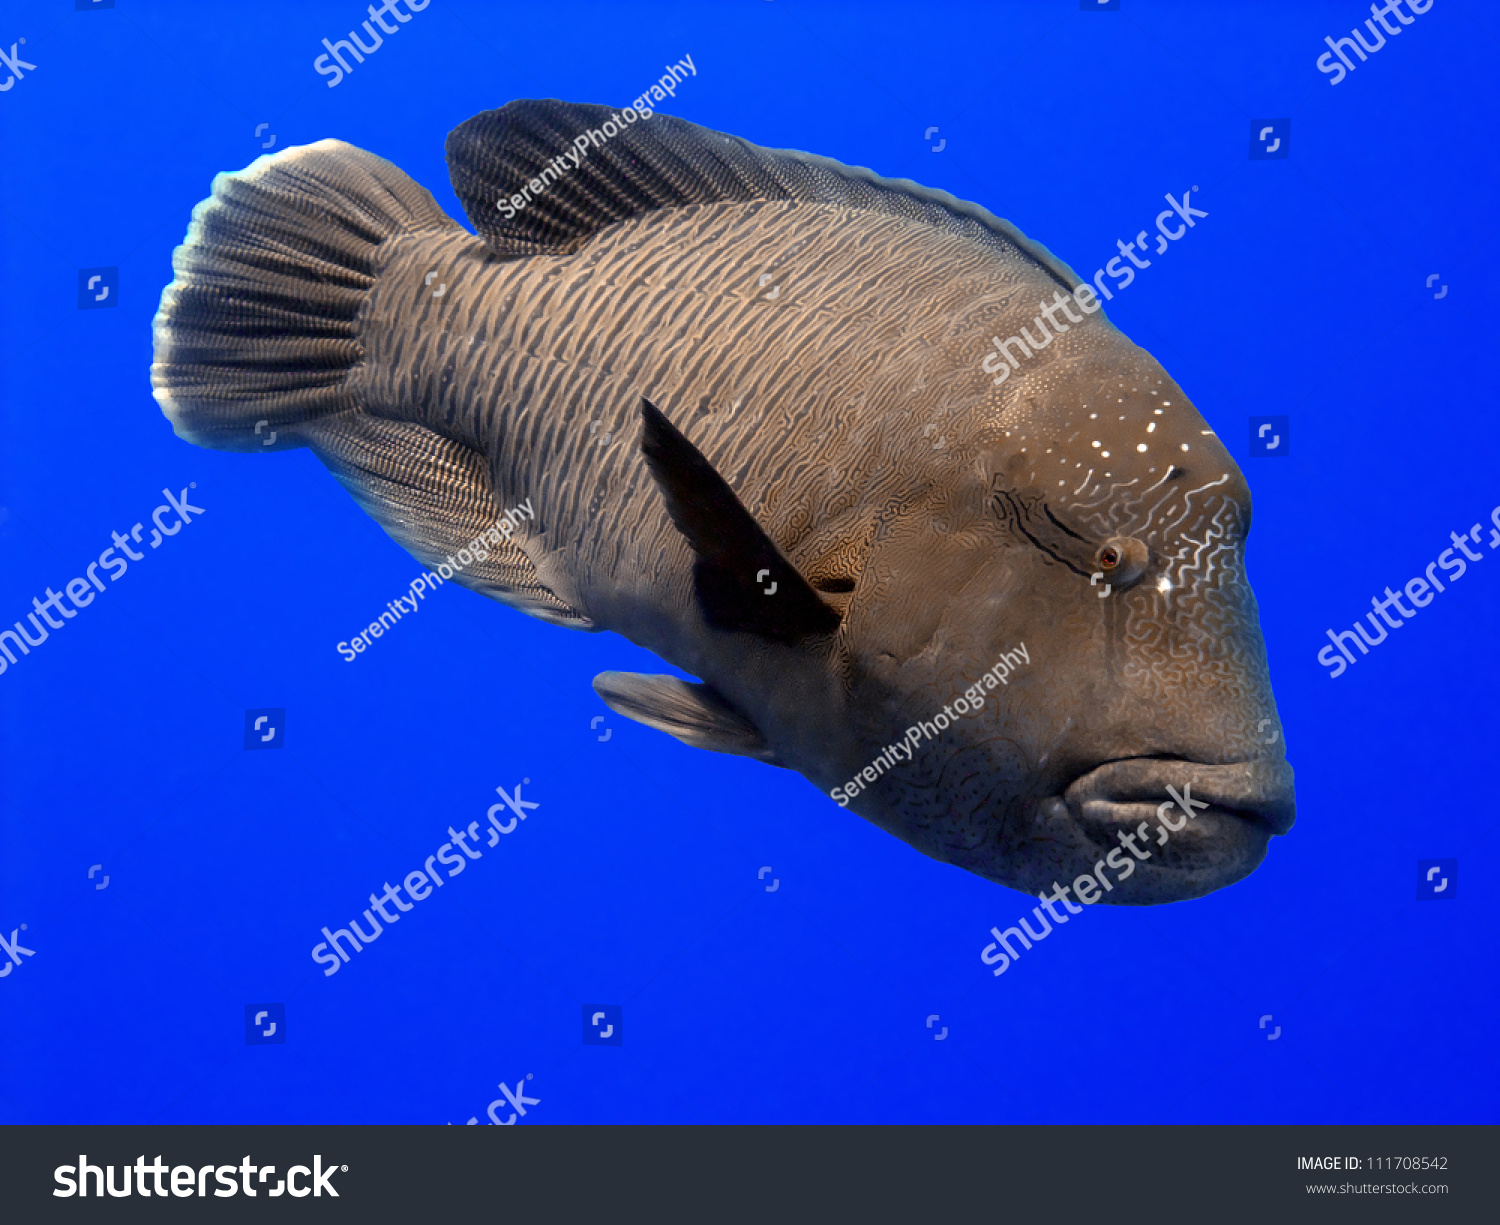 拿破仑濑鱼是被许多名称,包括毛利人的濑鱼,苏